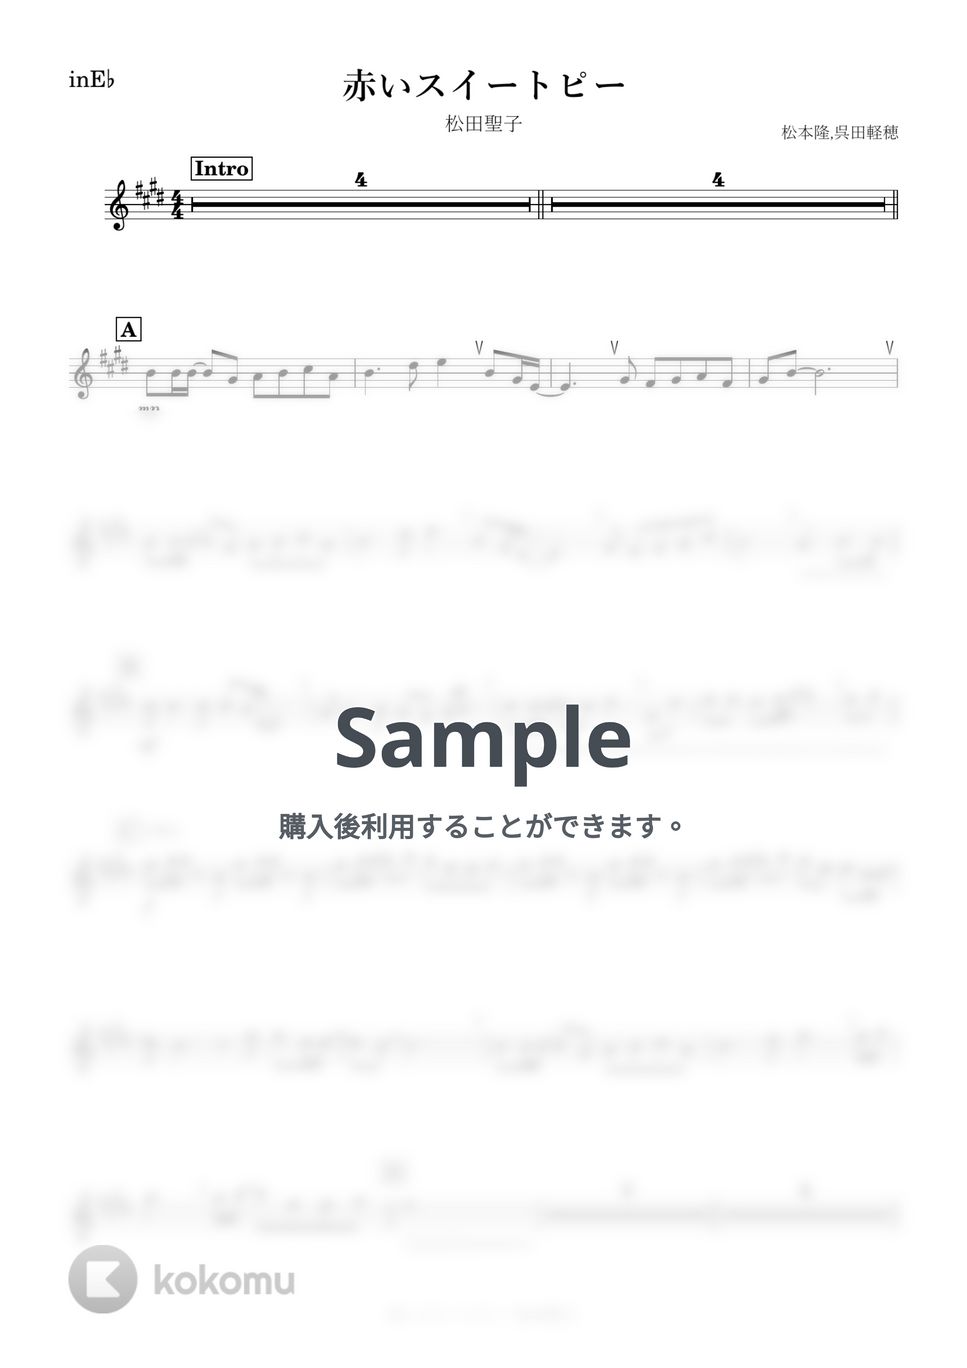 松田聖子 - 赤いスイートピー (E♭) by kanamusic